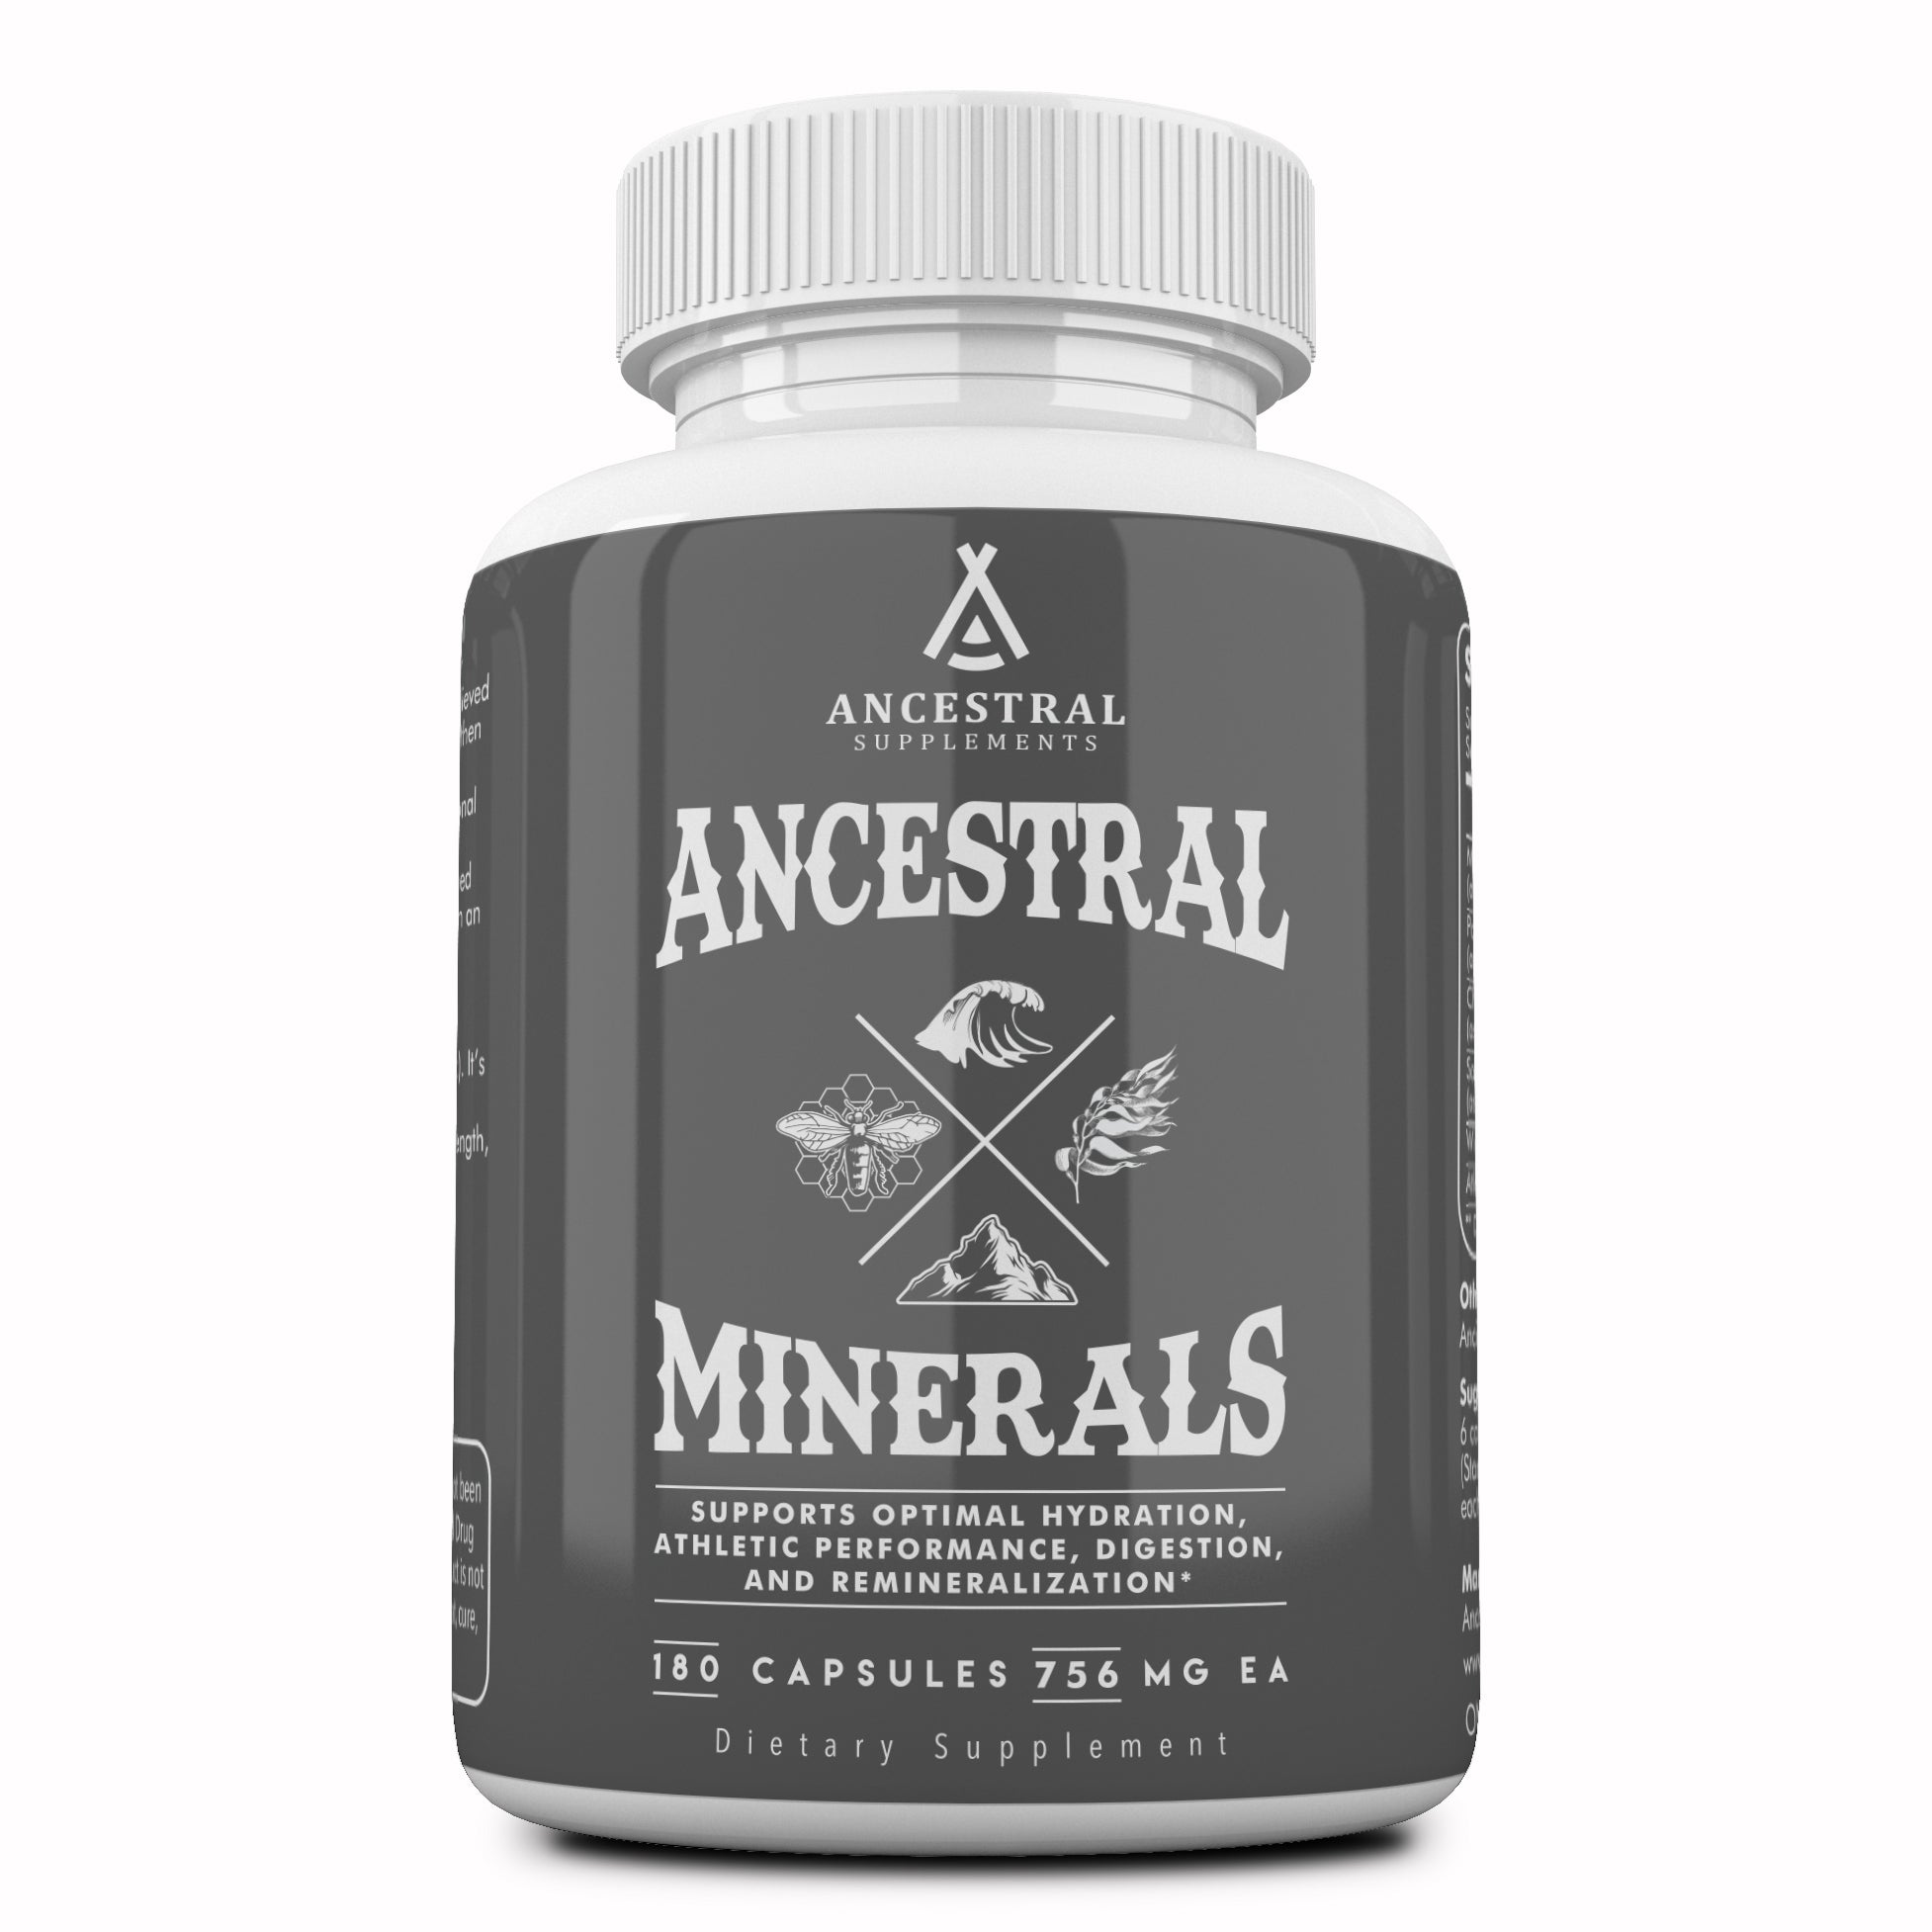 Ancestral Supplements Minerals